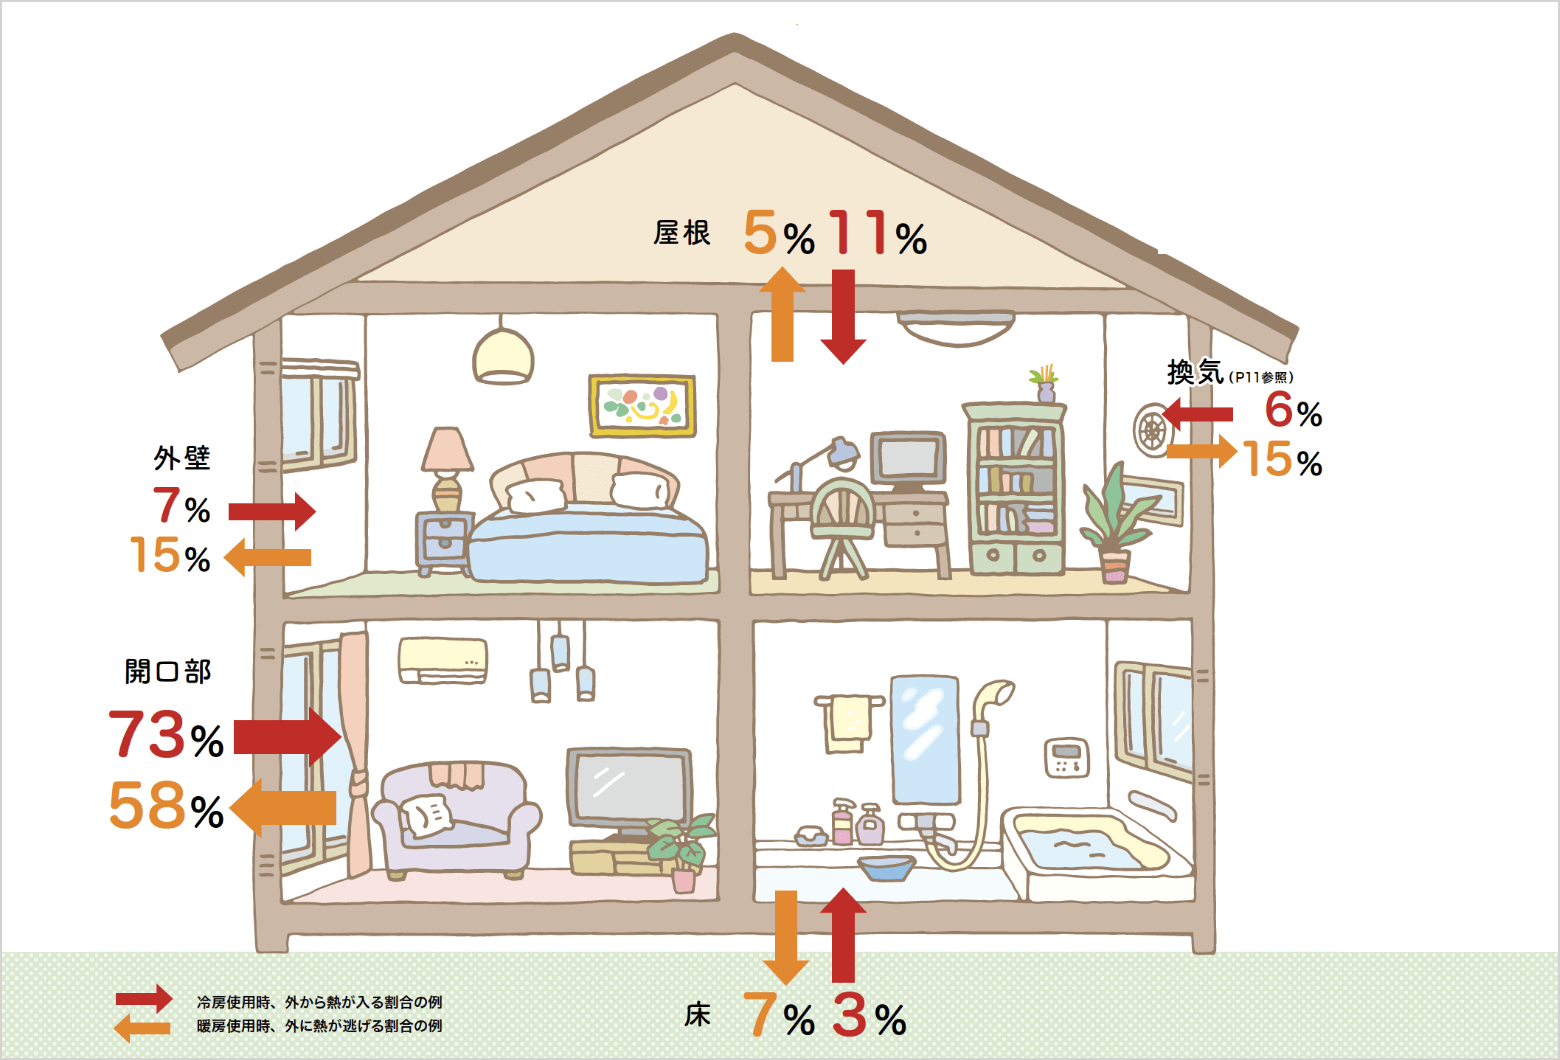 冷房使用時、外から熟が入る割合の例 … 屋根：11%、換気：6%、床：3%、外壁：7%、開口部：73%。暖房使用時、外に熱か逃げる割合の例 …  屋根：5%、換気：15%、床：7%、外壁：15%、開口部：58%。